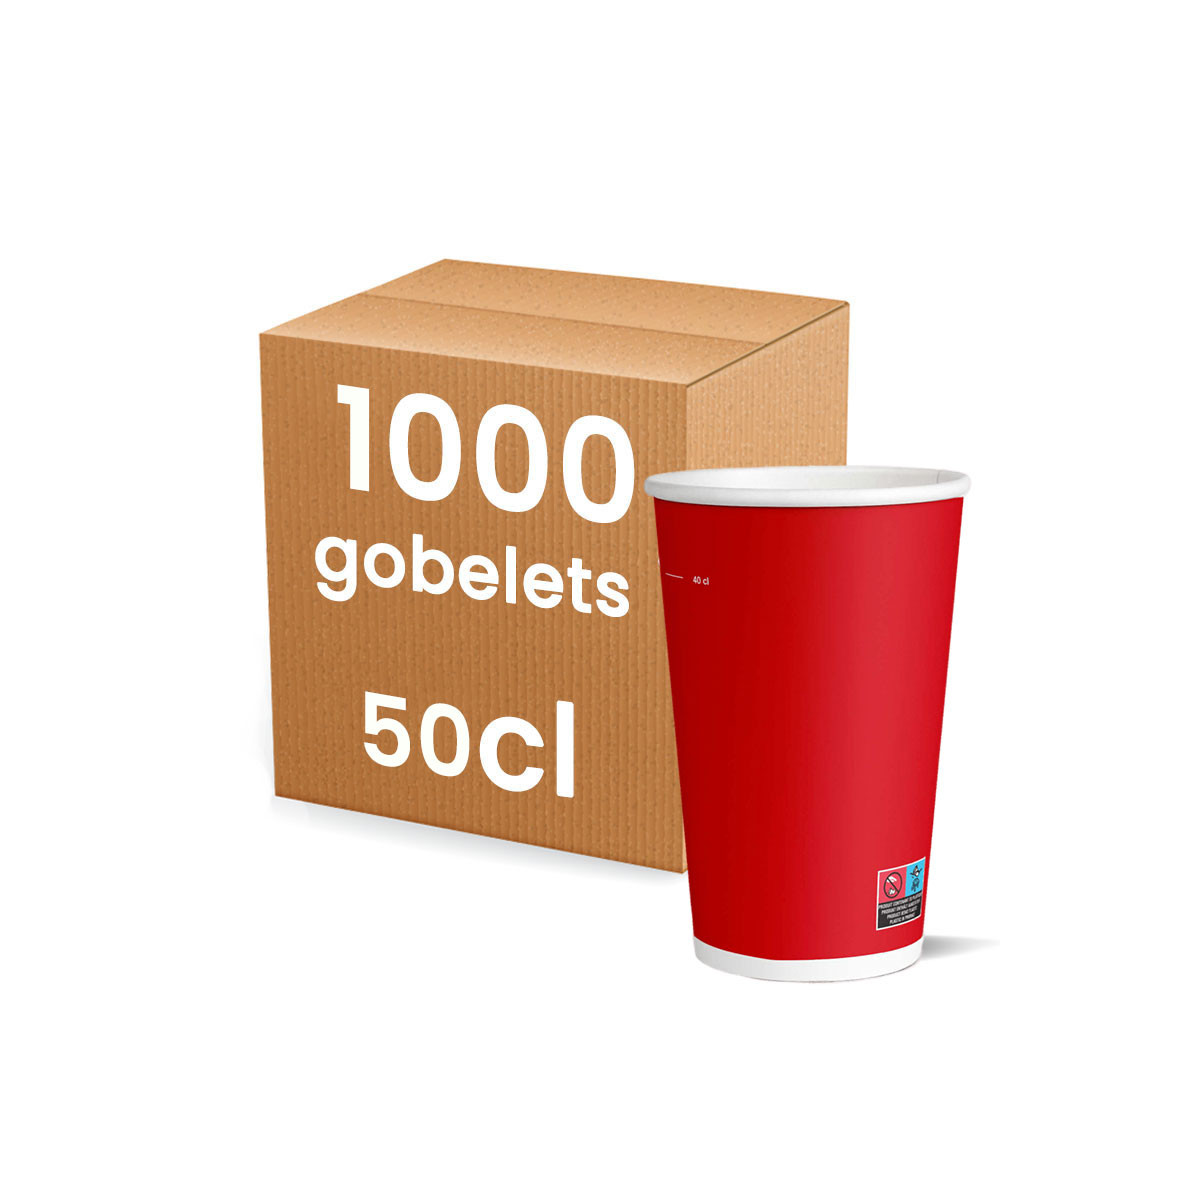 Gobelet carton 24 cl - Colis de 1000